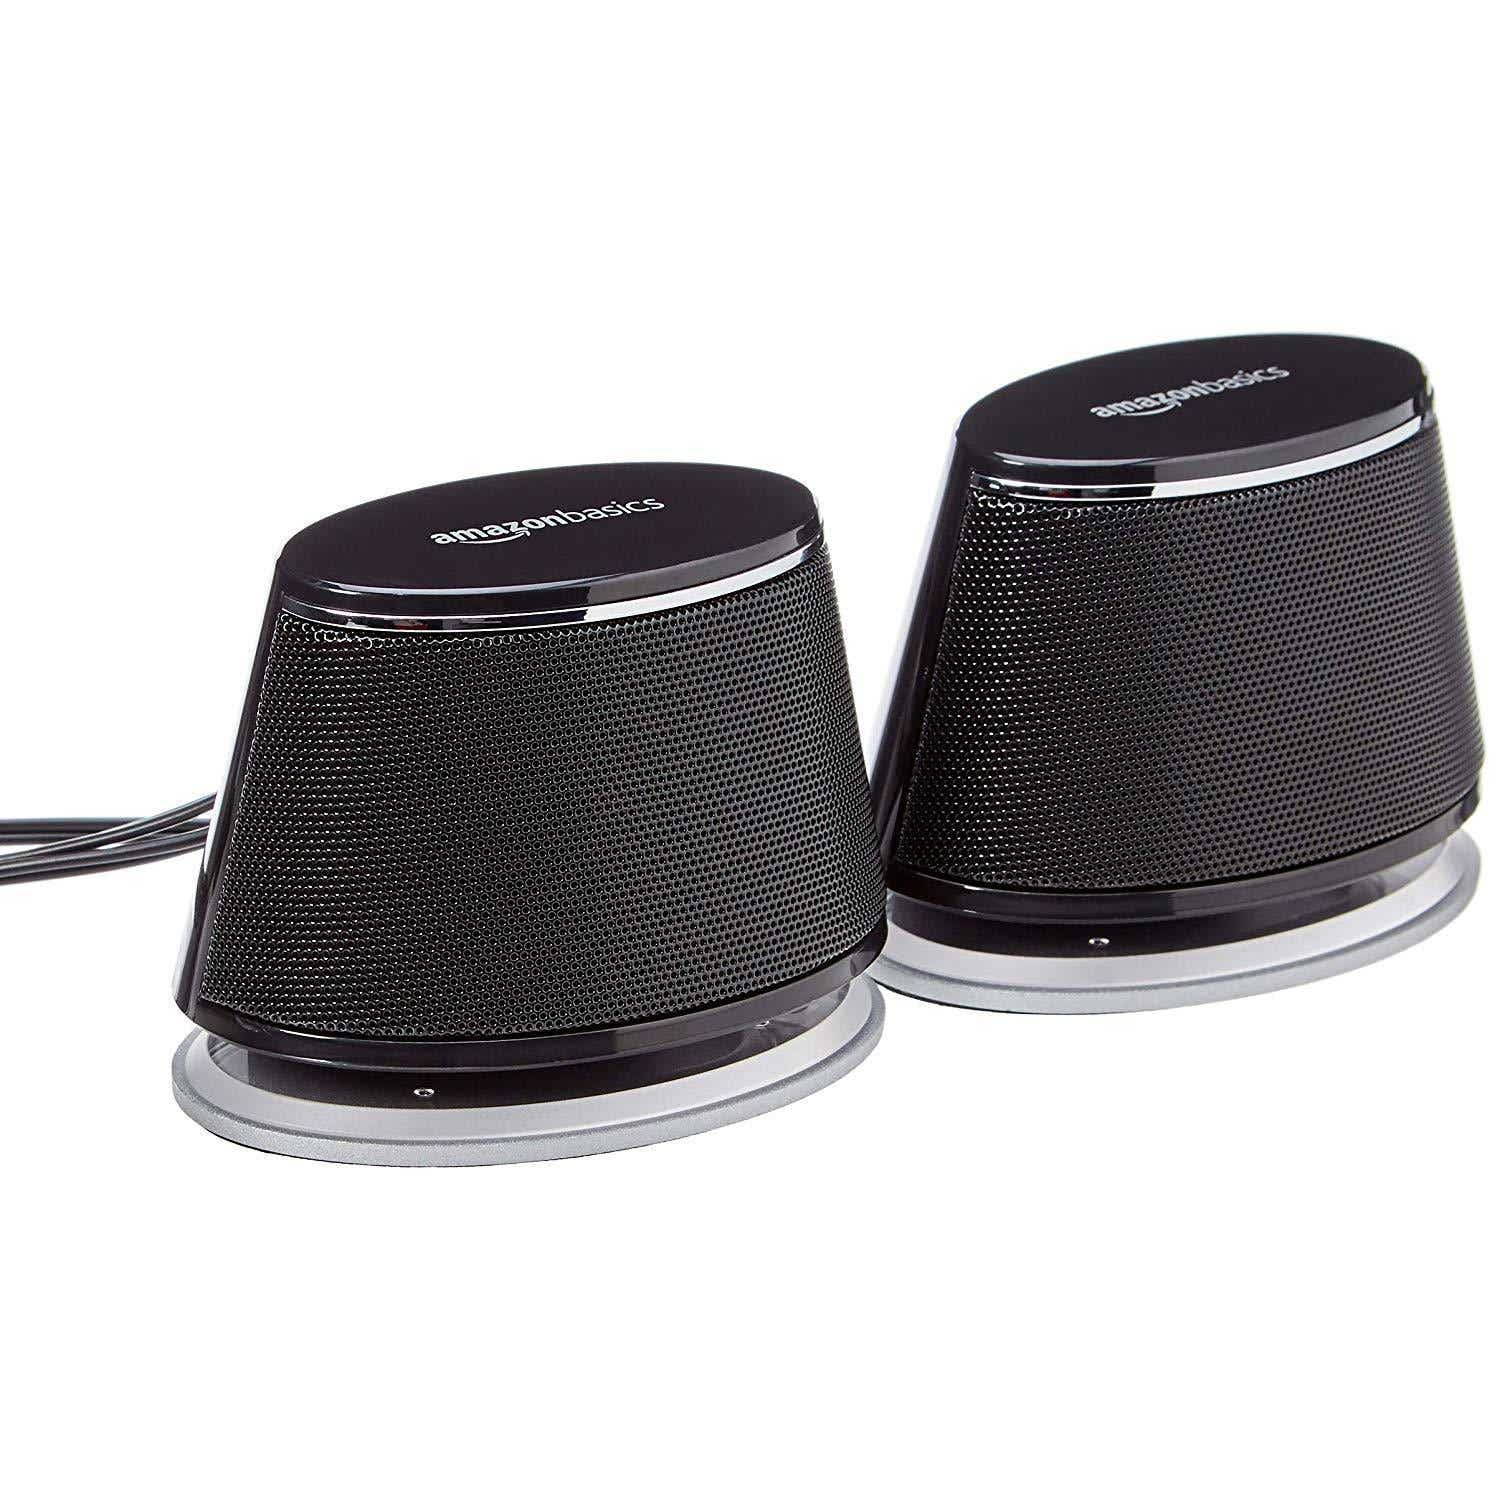 Haut-parleurs d'ordinateur alimentés par USB AmazonBasics avec son dynamique - La meilleure option bon marché